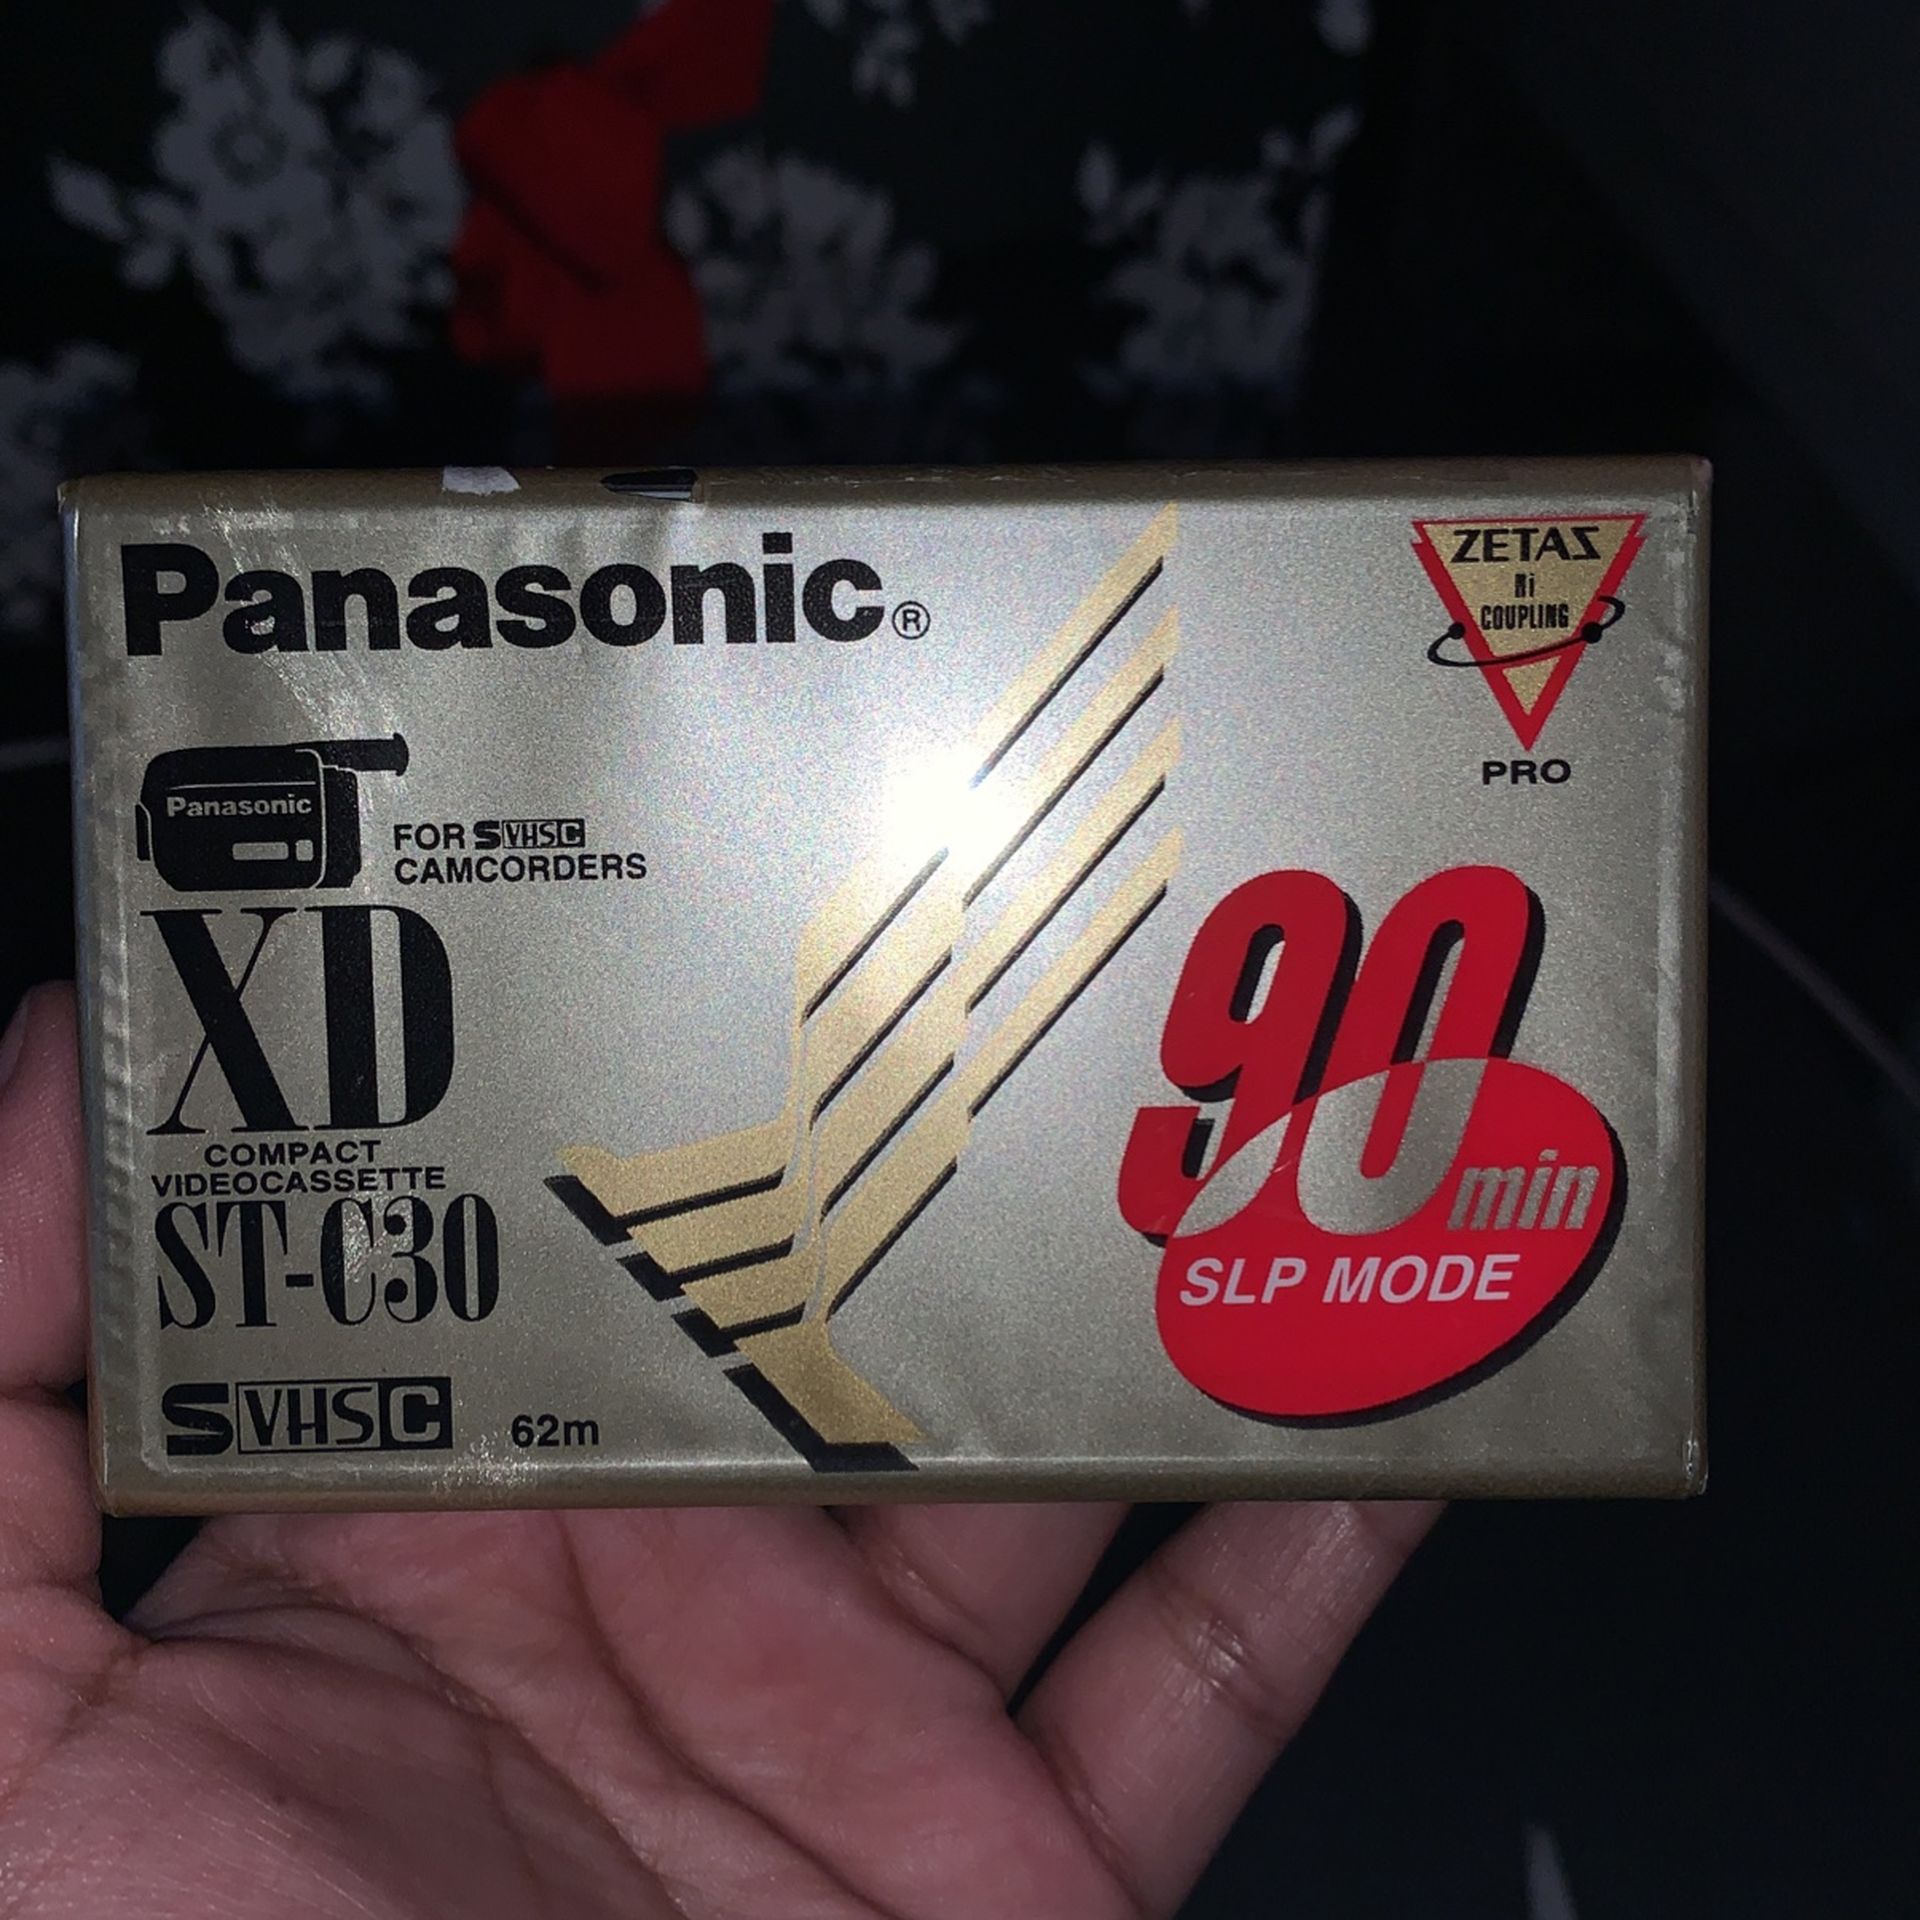 Panasonic XD - ST-C30